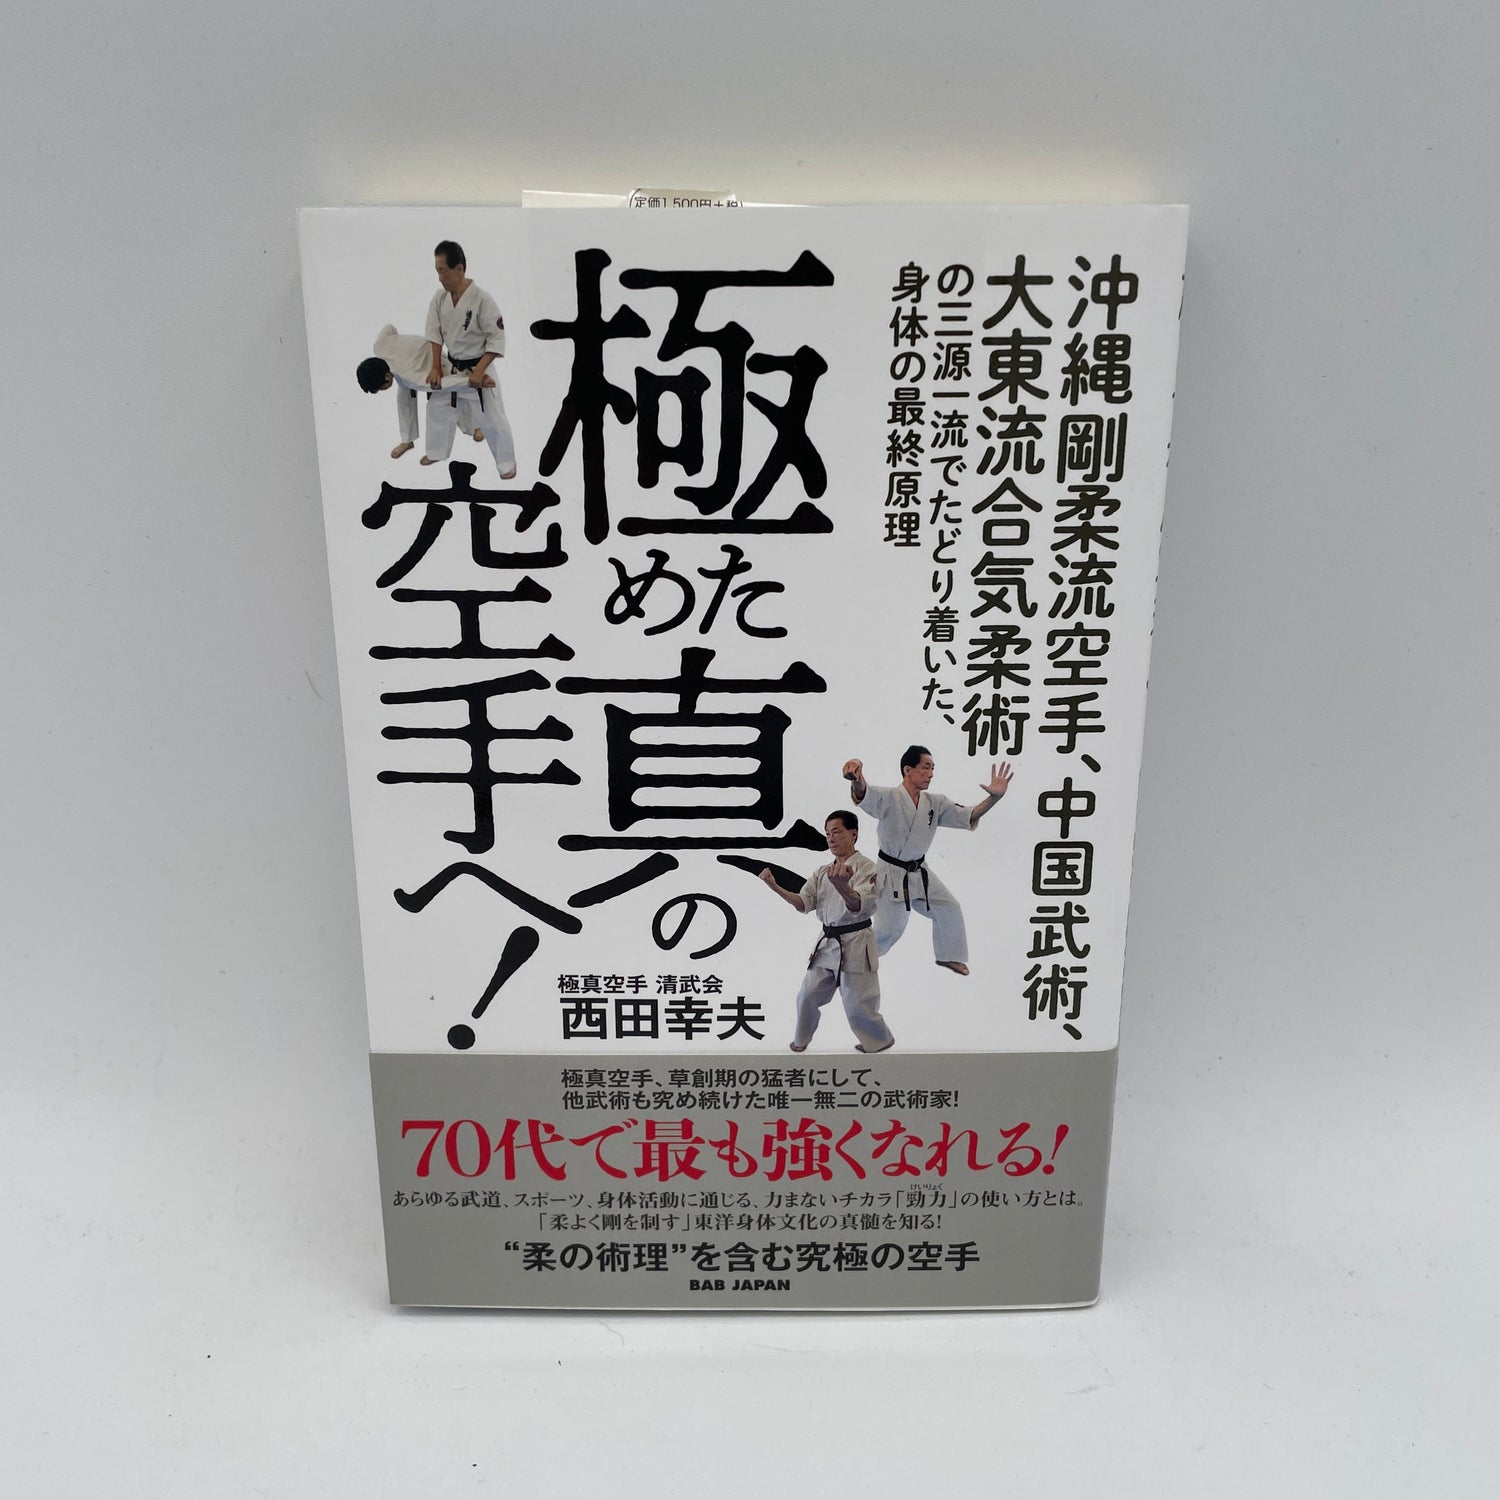 Ultimate True Karate: Principio final del cuerpo de Goju Ryu, artes marciales chinas y libro Daito Ryu Aikijujutsu de Yukio Nishida